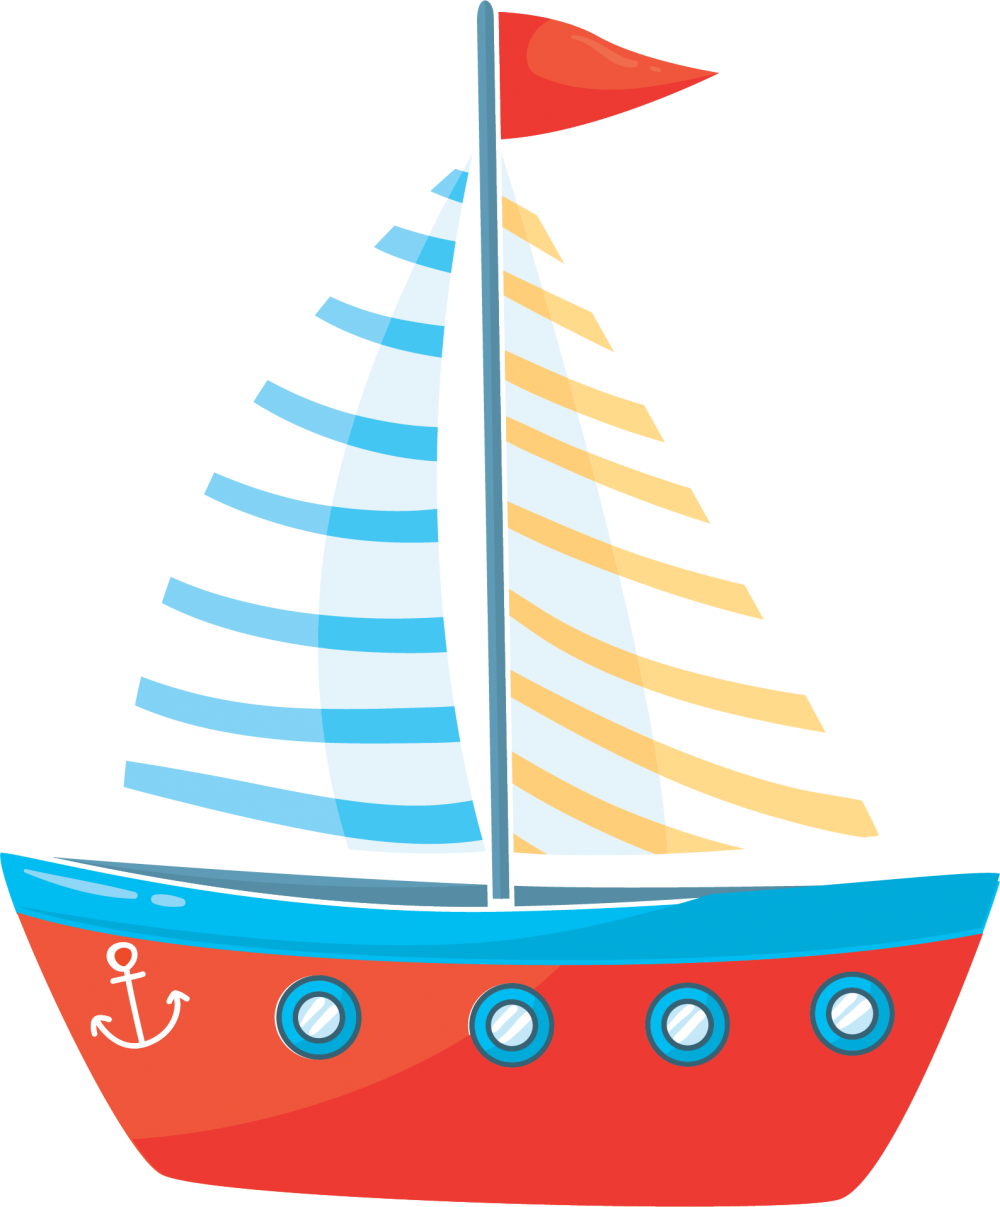 Нарисованный кораблик с флажками